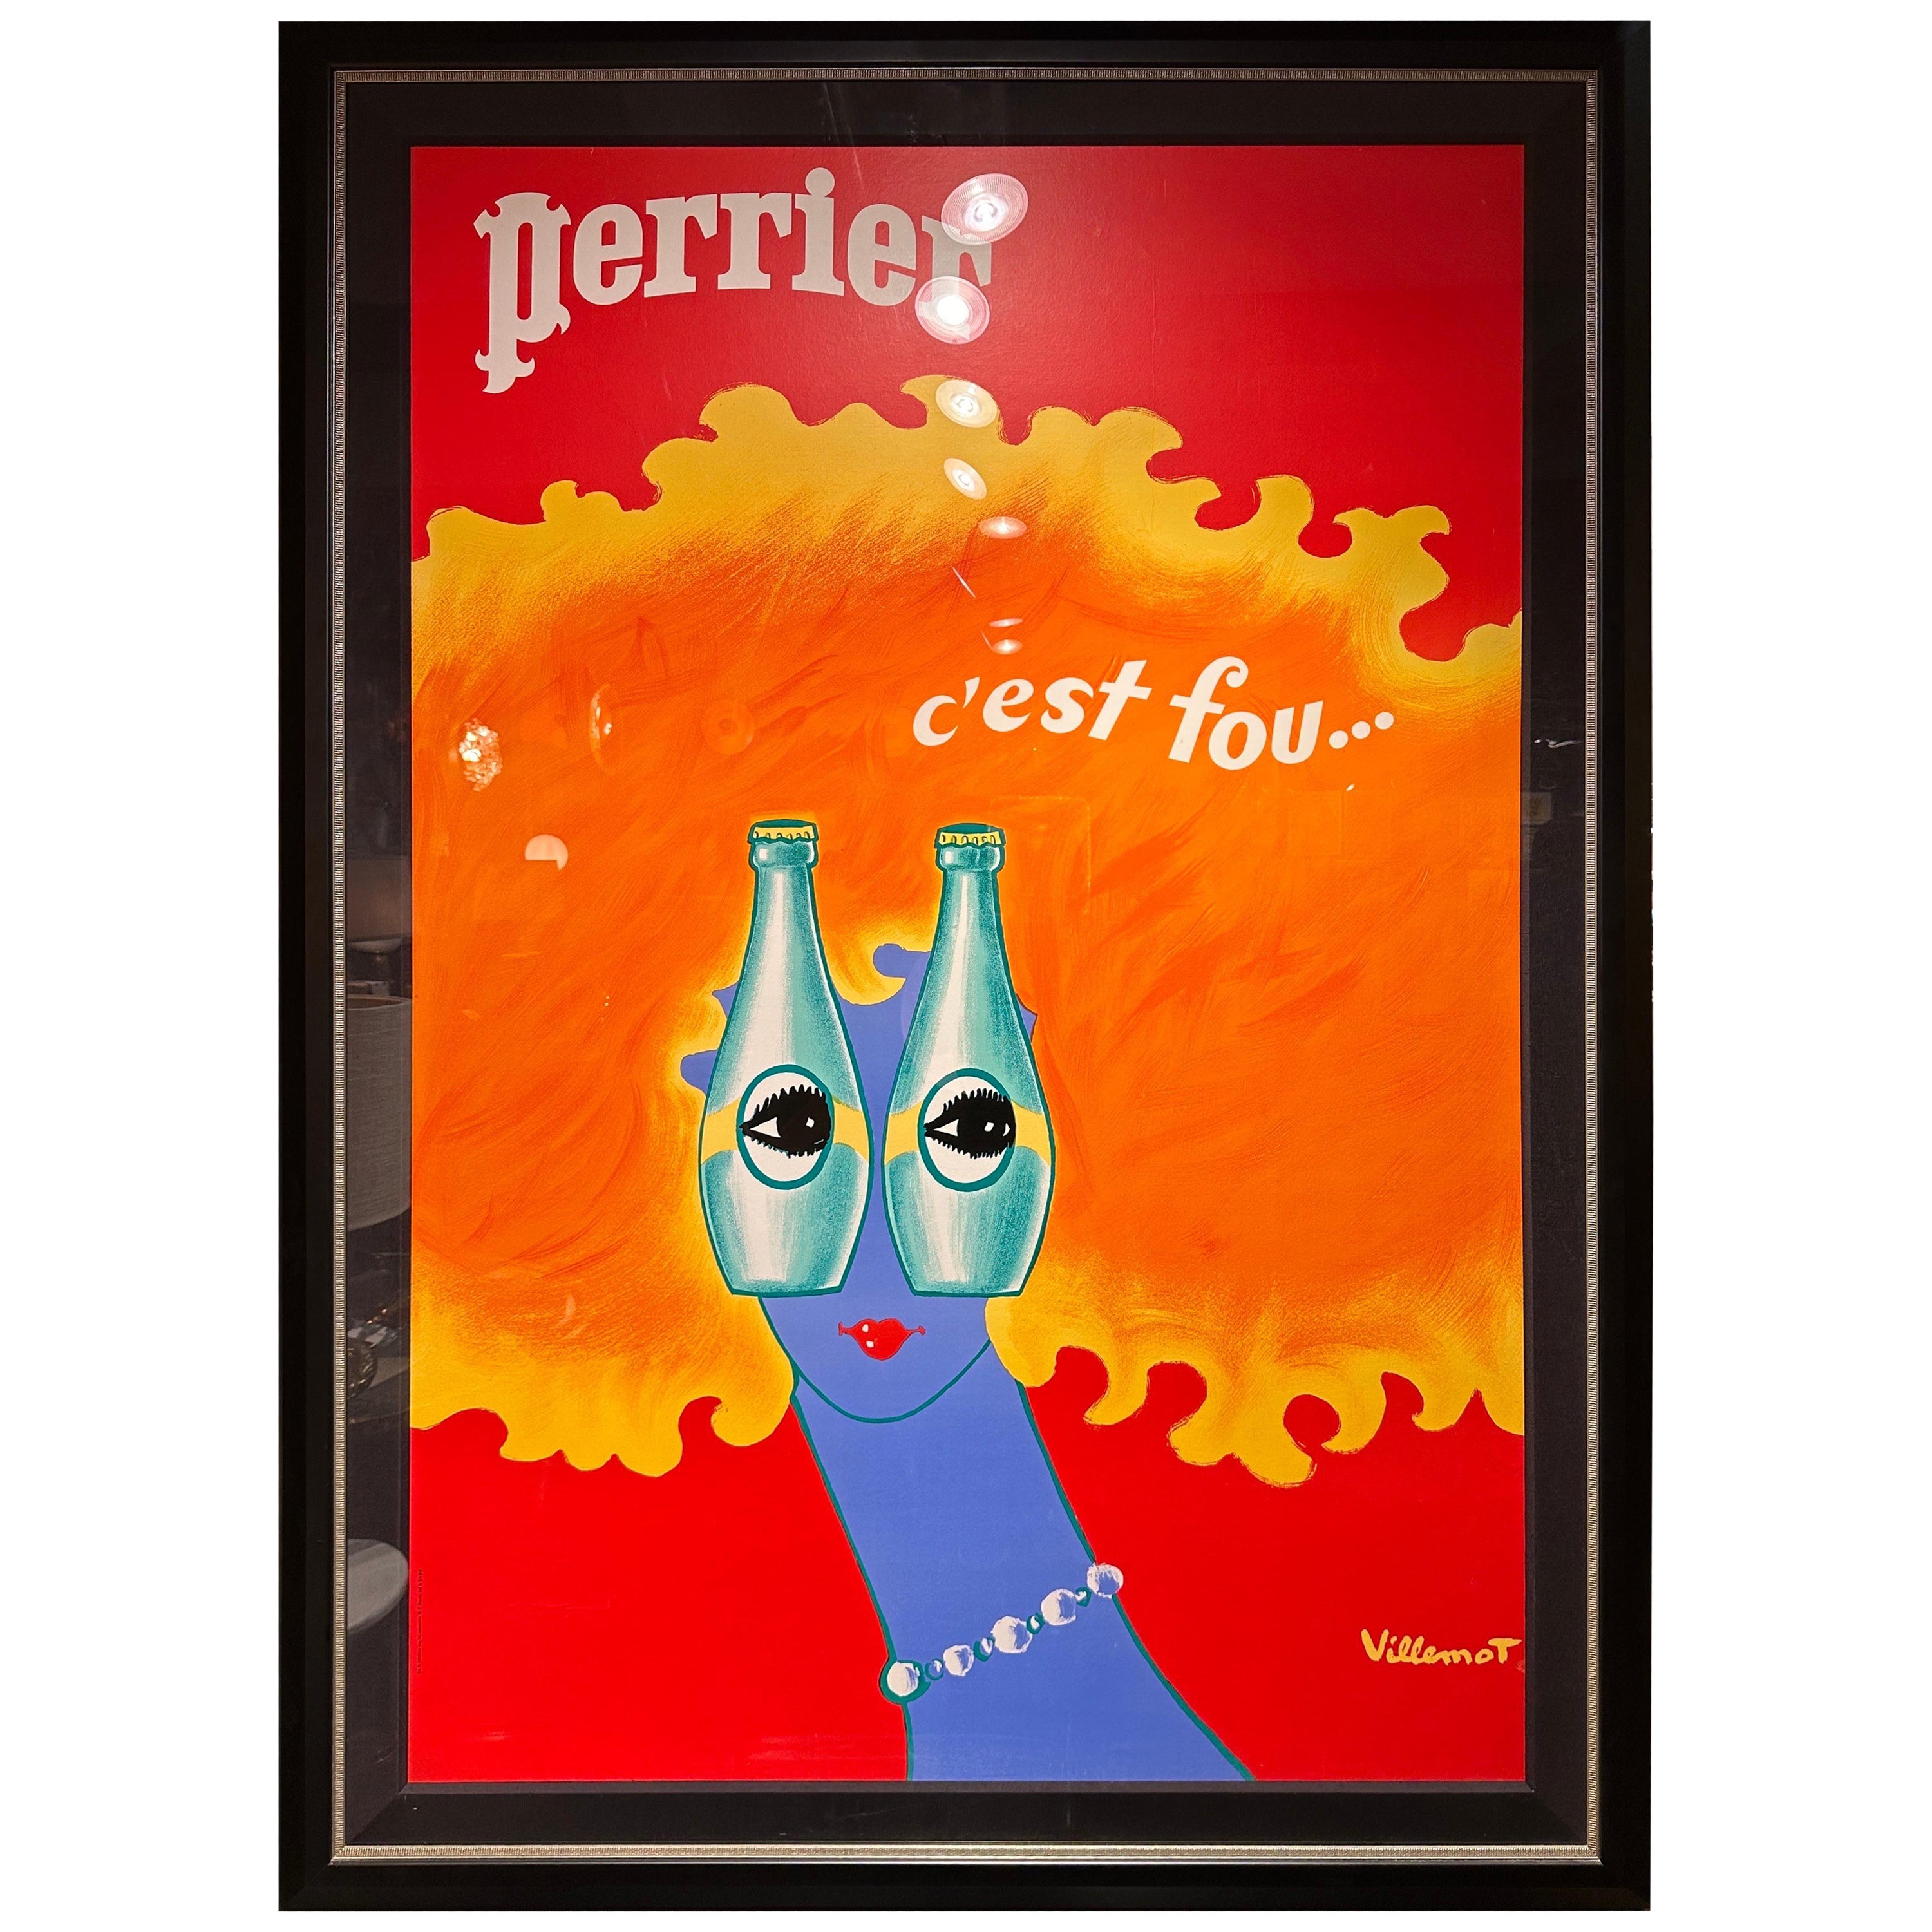 Rare “Perrier” Poster by Bernard Villemot For Sale